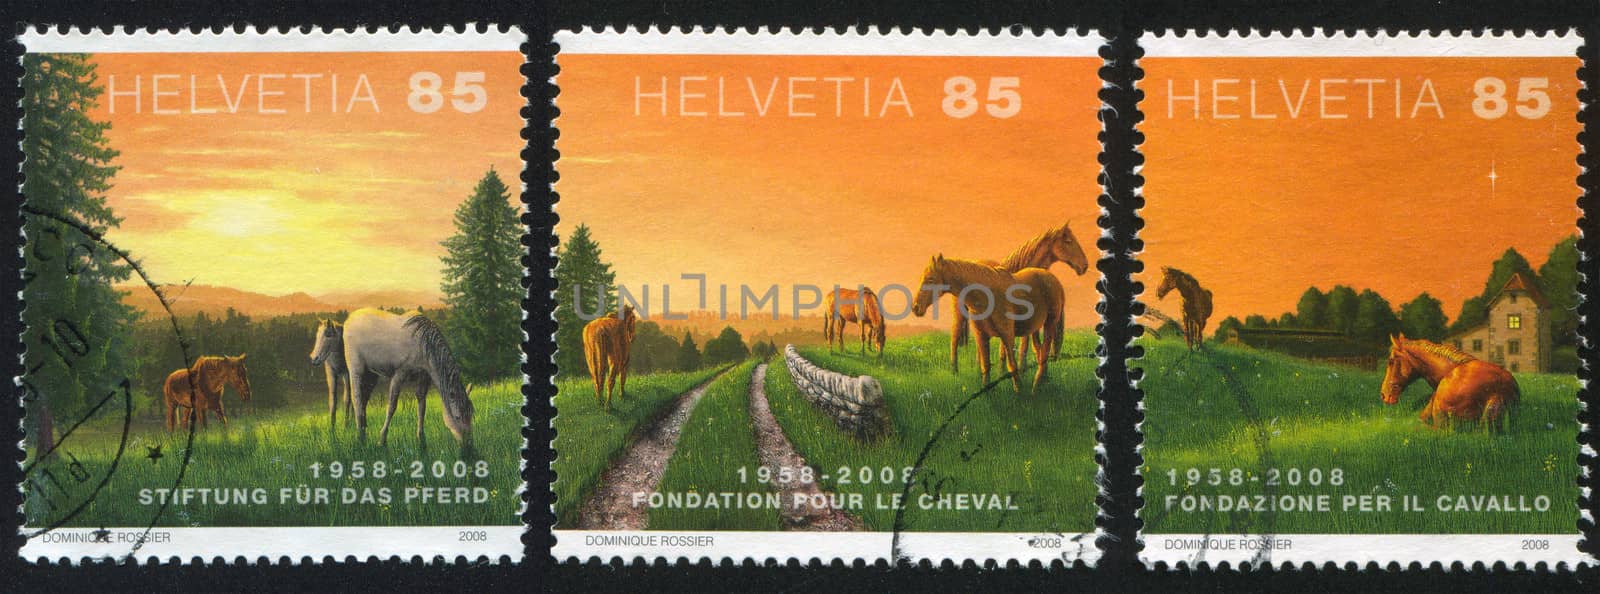 SWITZERLAND - CIRCA 2008: stamp printed by Switzerland, shows Horses and sun, circa 2008